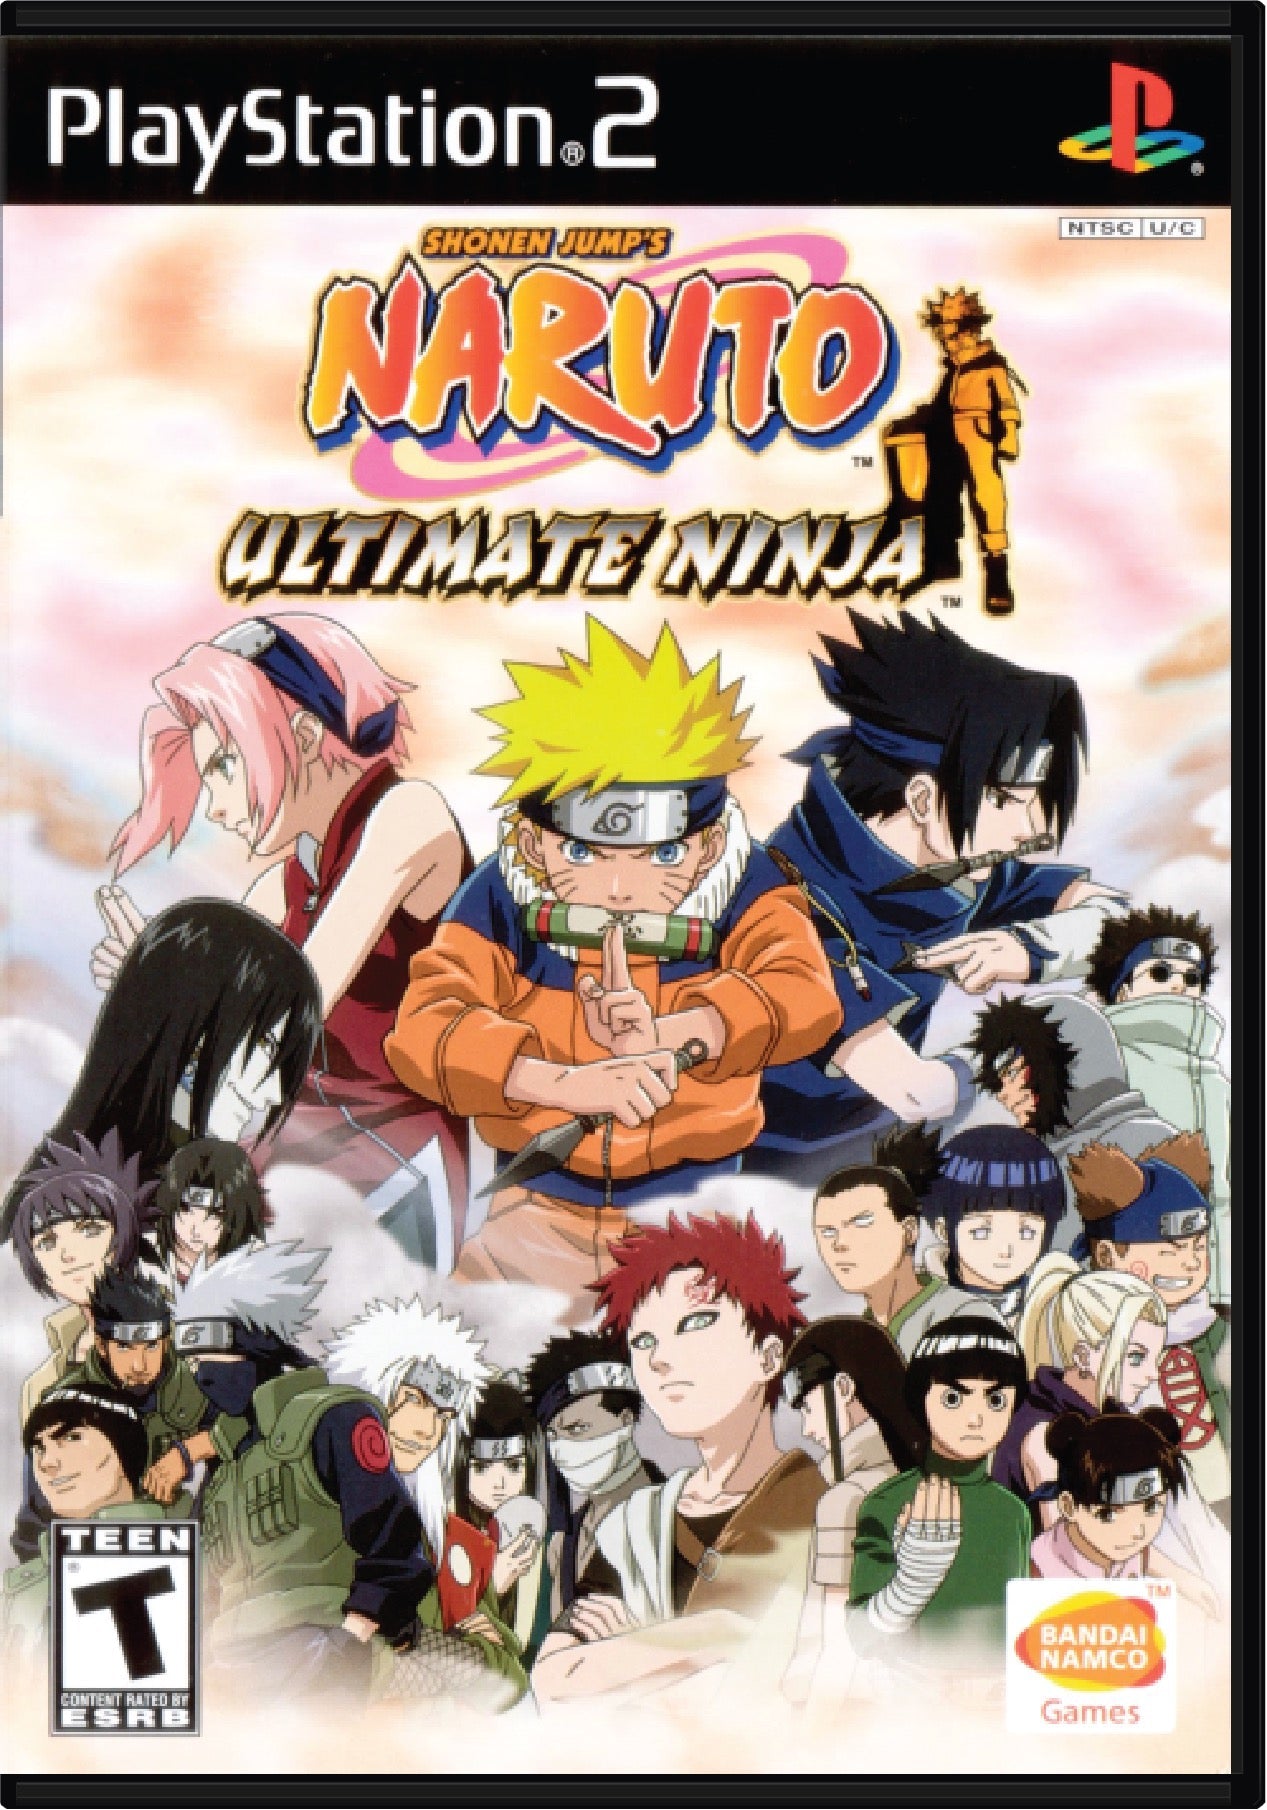 Naruto Ultimate Ninja Cover Art and Product Photo